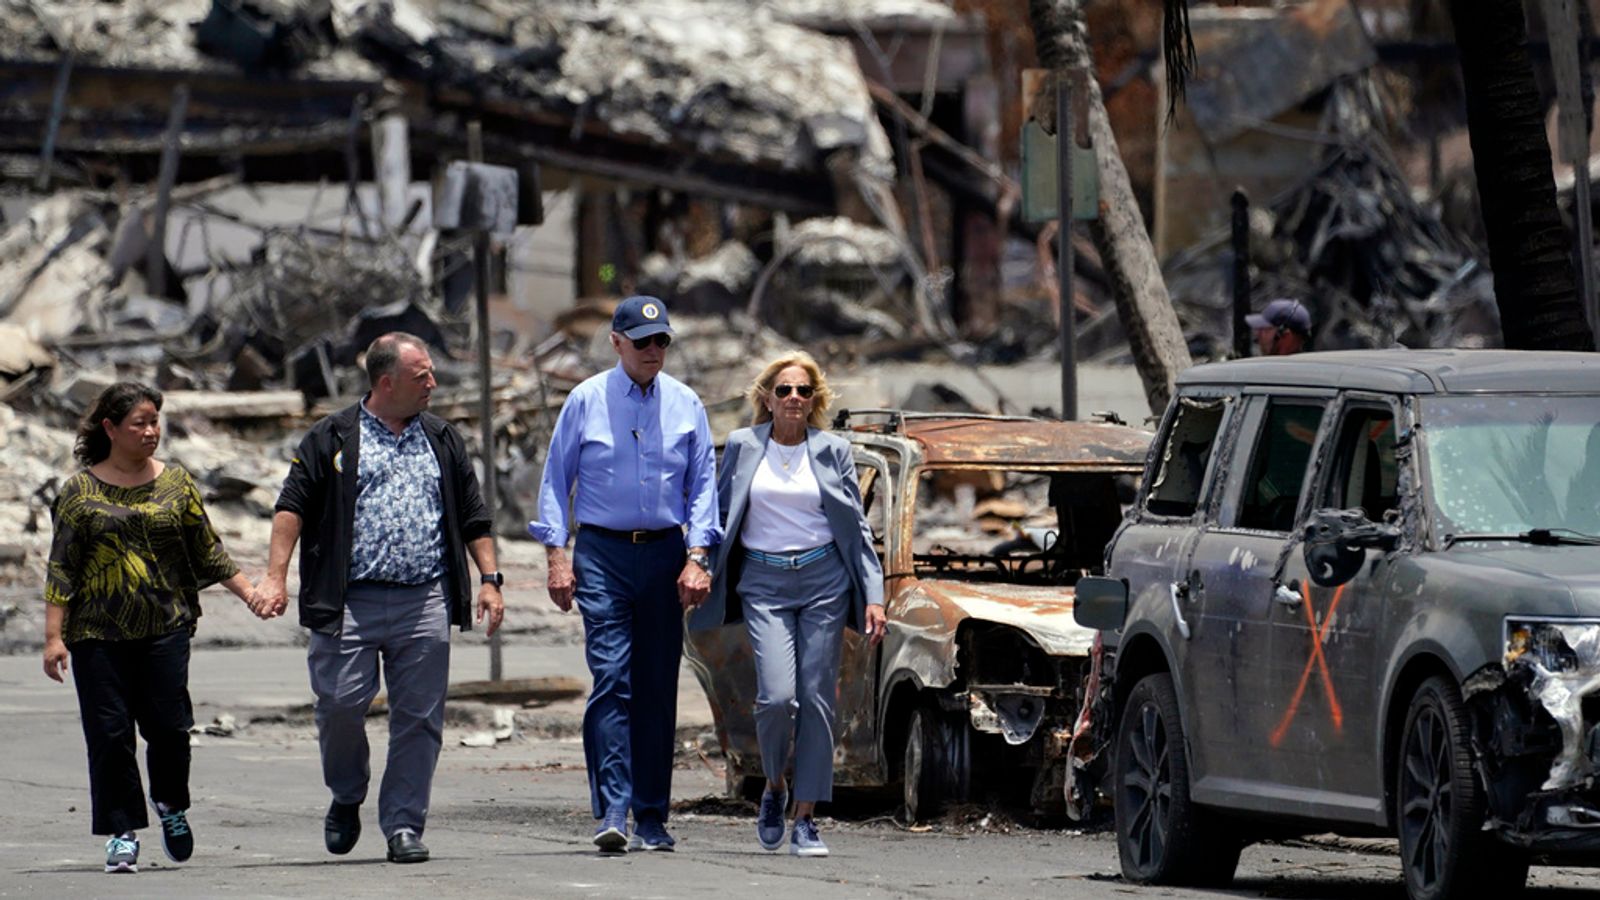 Joe Biden spoznal kako delikatne so lahko besede ob naravnih nesrečah – Na vprašanje novinarjev o naraščajočem številu žrtev v požaru na Havajih je, na plaži v Delawareu 13. avgusta, dejal : “Brez komentarja”